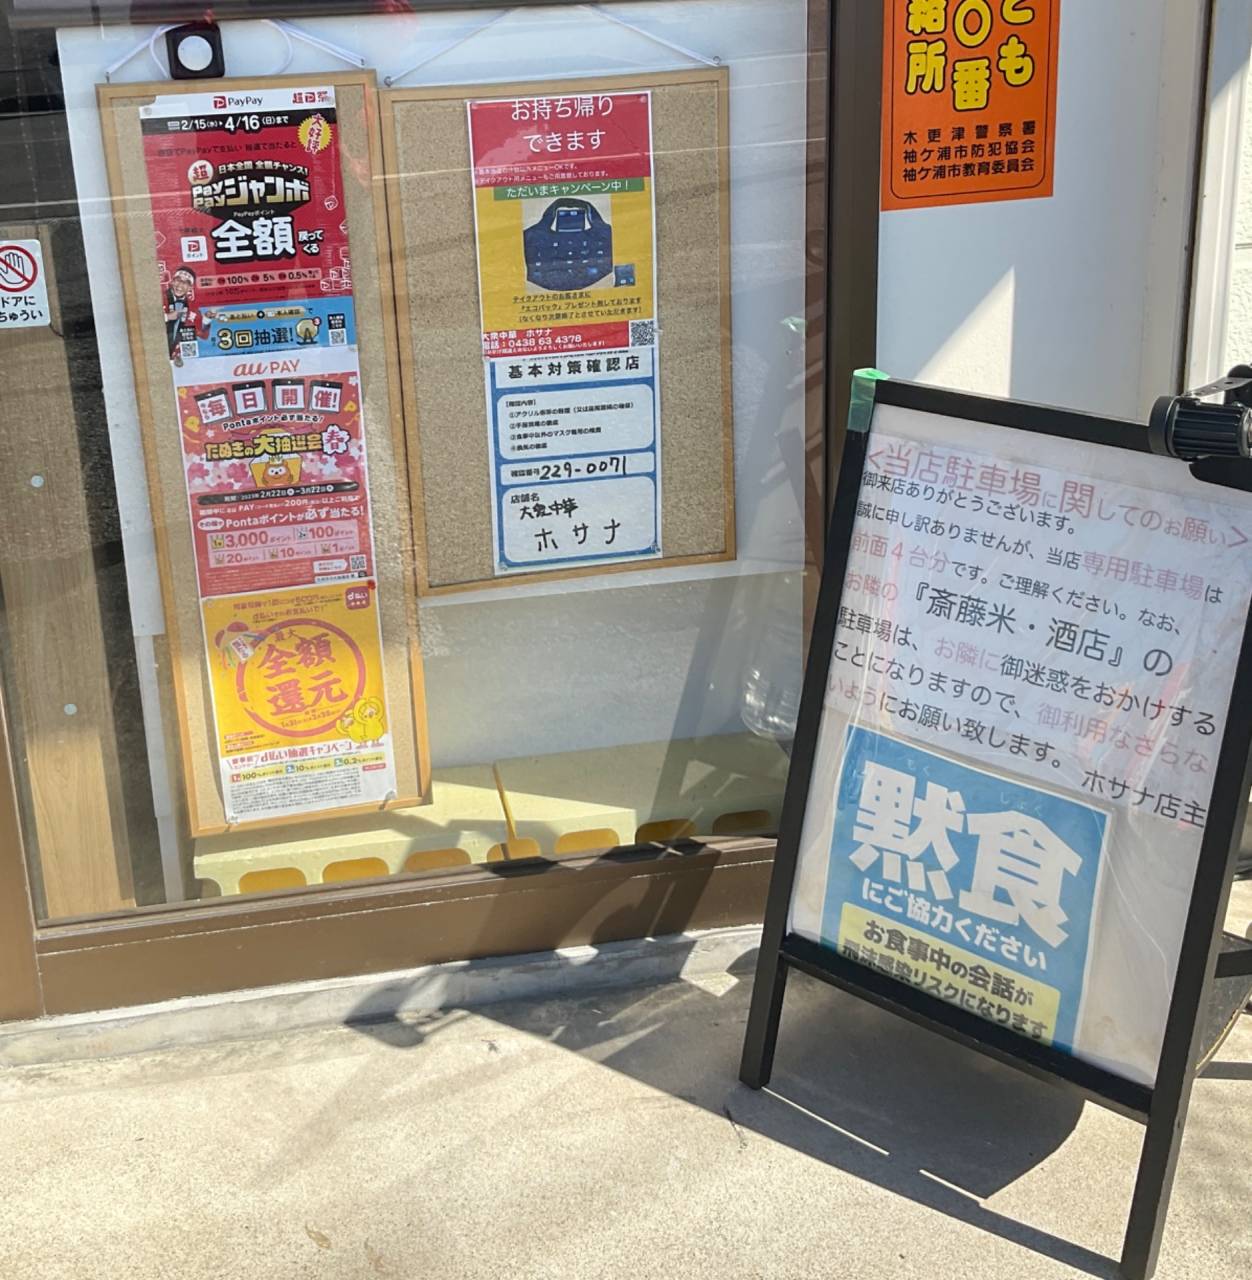 2/23(木)通常営業です  「袖ケ浦グルメチケット」「千葉県プレミアム食事券」ご利用いただけます。